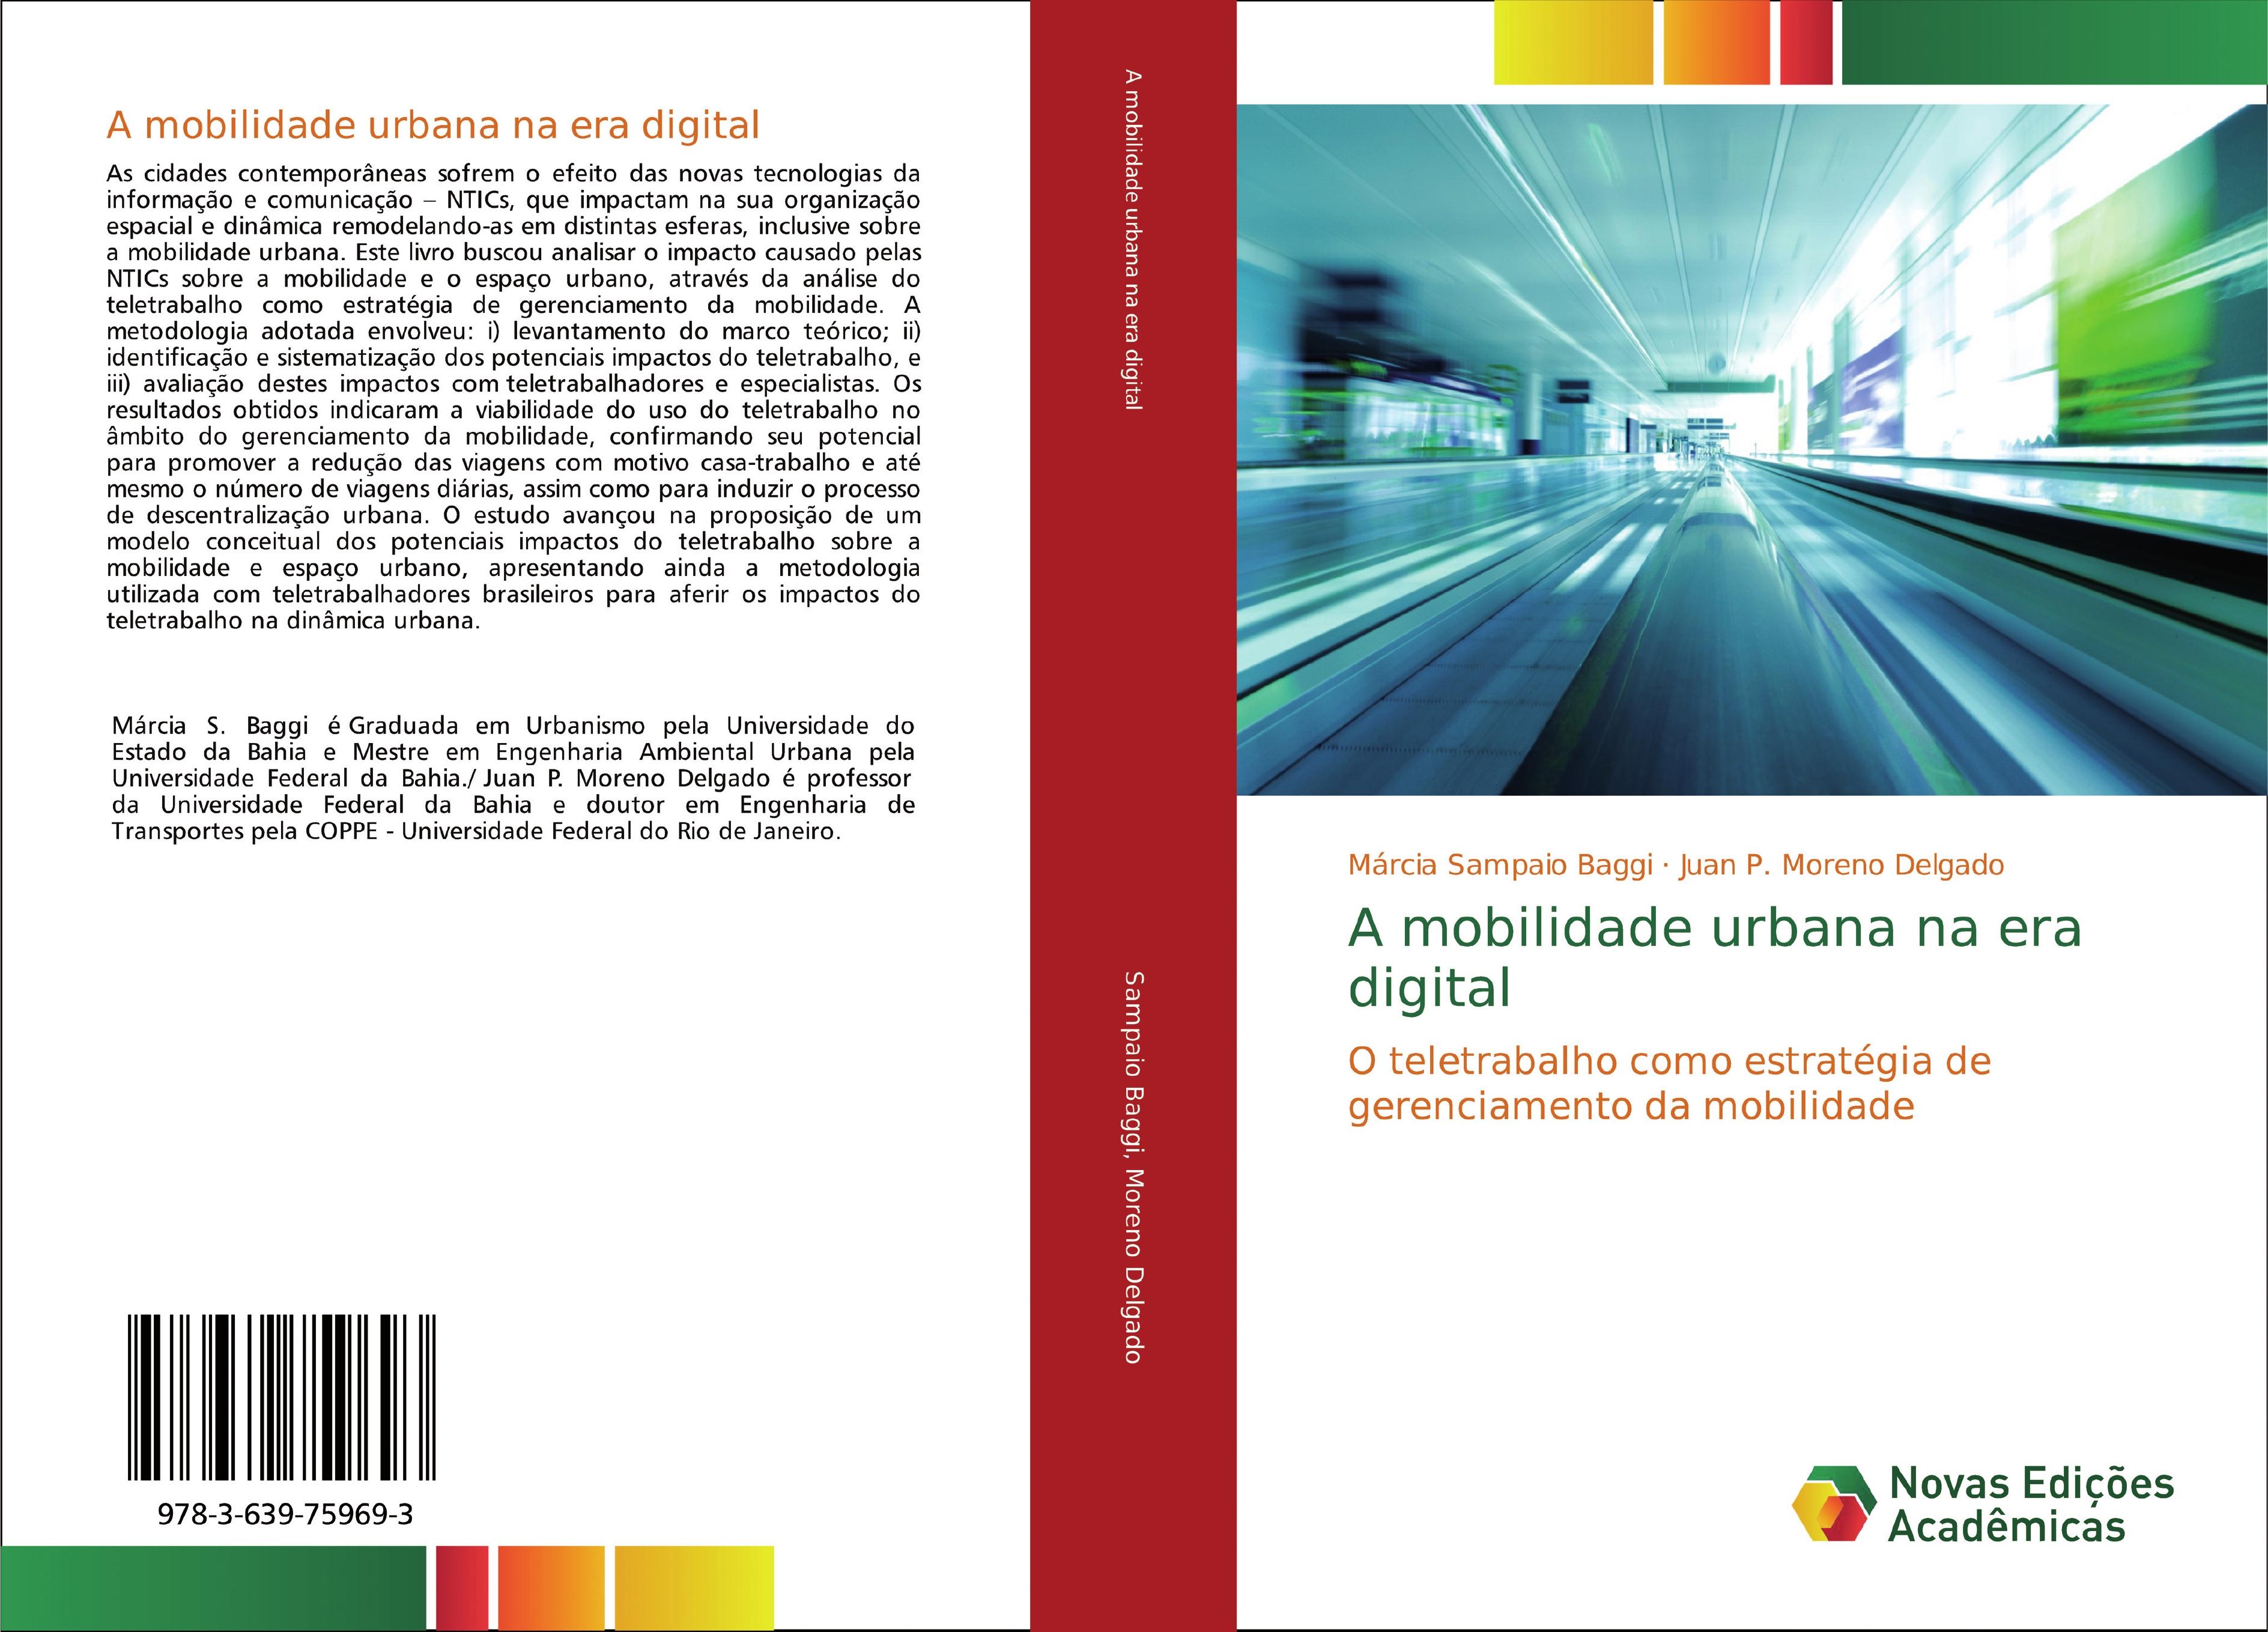 A mobilidade urbana na era digital - Márcia Sampaio Baggi Juan P. Moreno Delgado